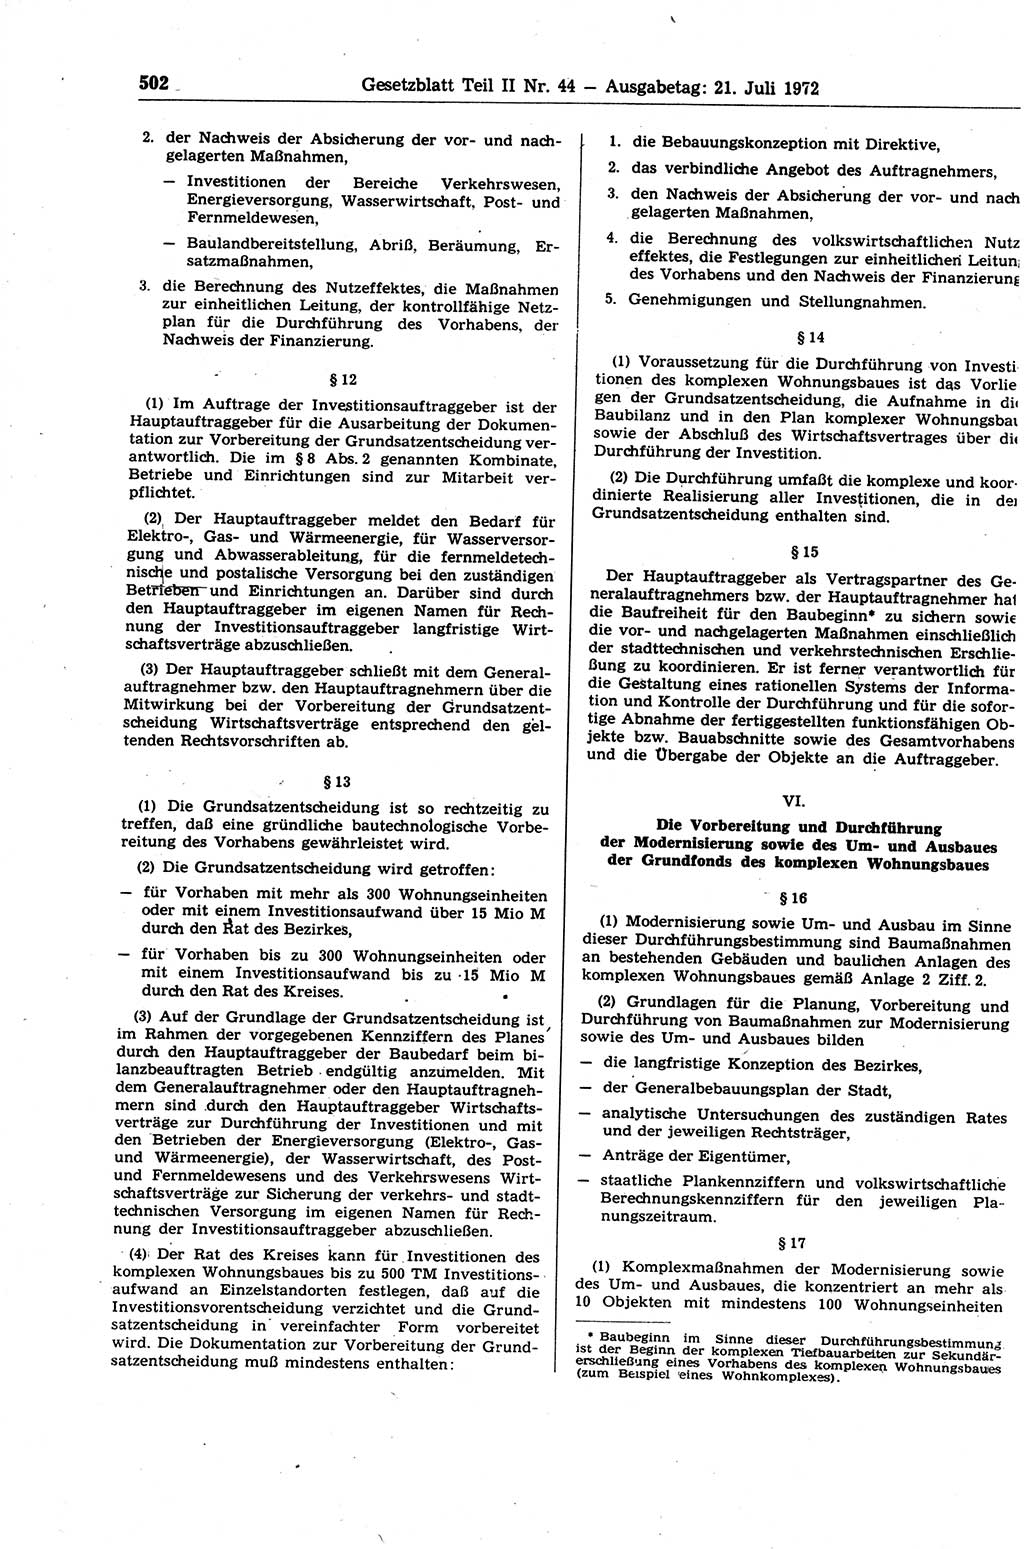 Gesetzblatt (GBl.) der Deutschen Demokratischen Republik (DDR) Teil ⅠⅠ 1972, Seite 502 (GBl. DDR ⅠⅠ 1972, S. 502)